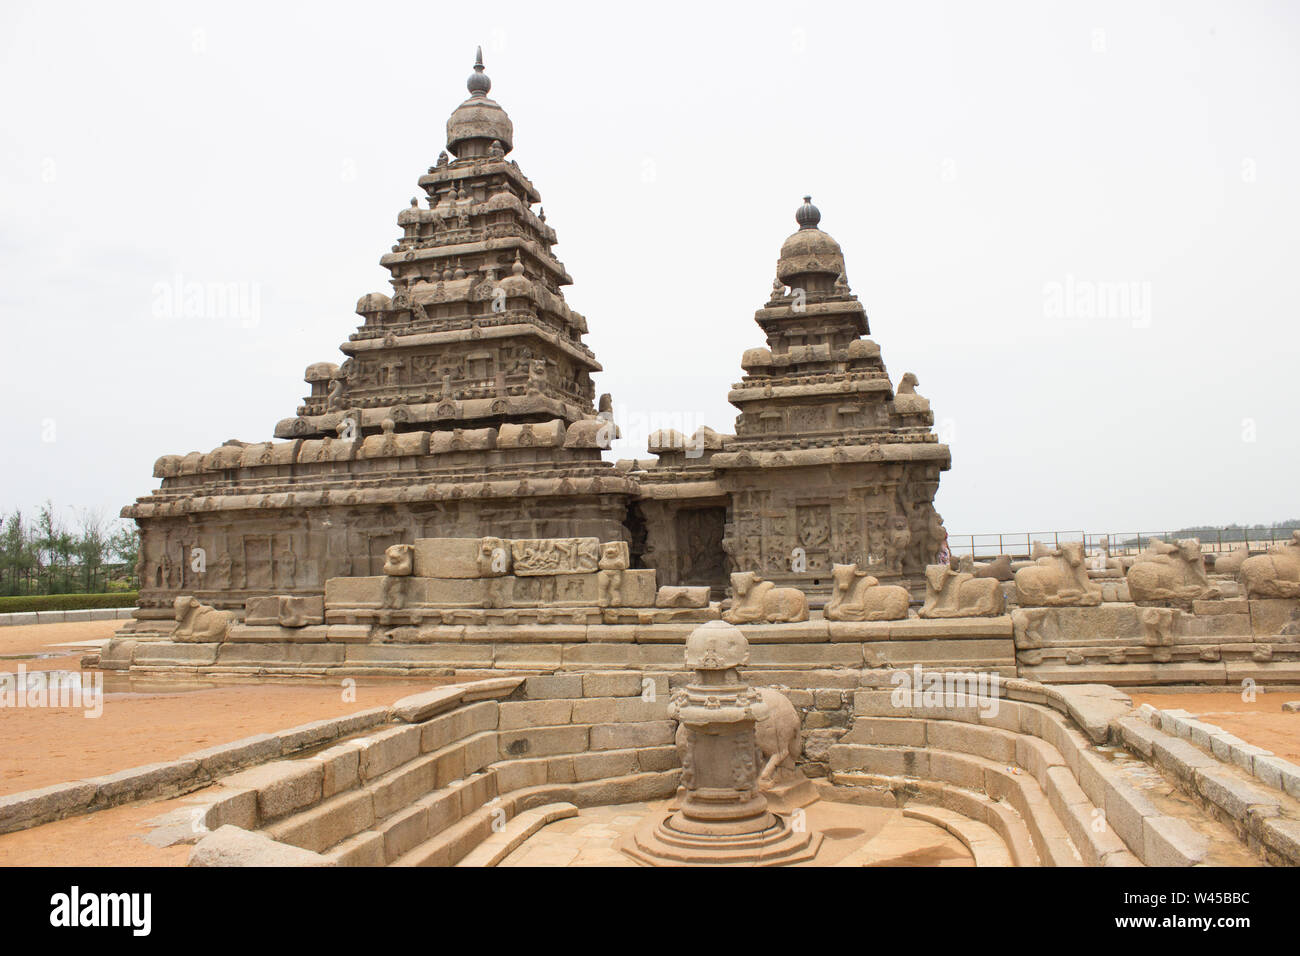 The Mahabalipuram Temple at the coast near Chennai Stock Photo